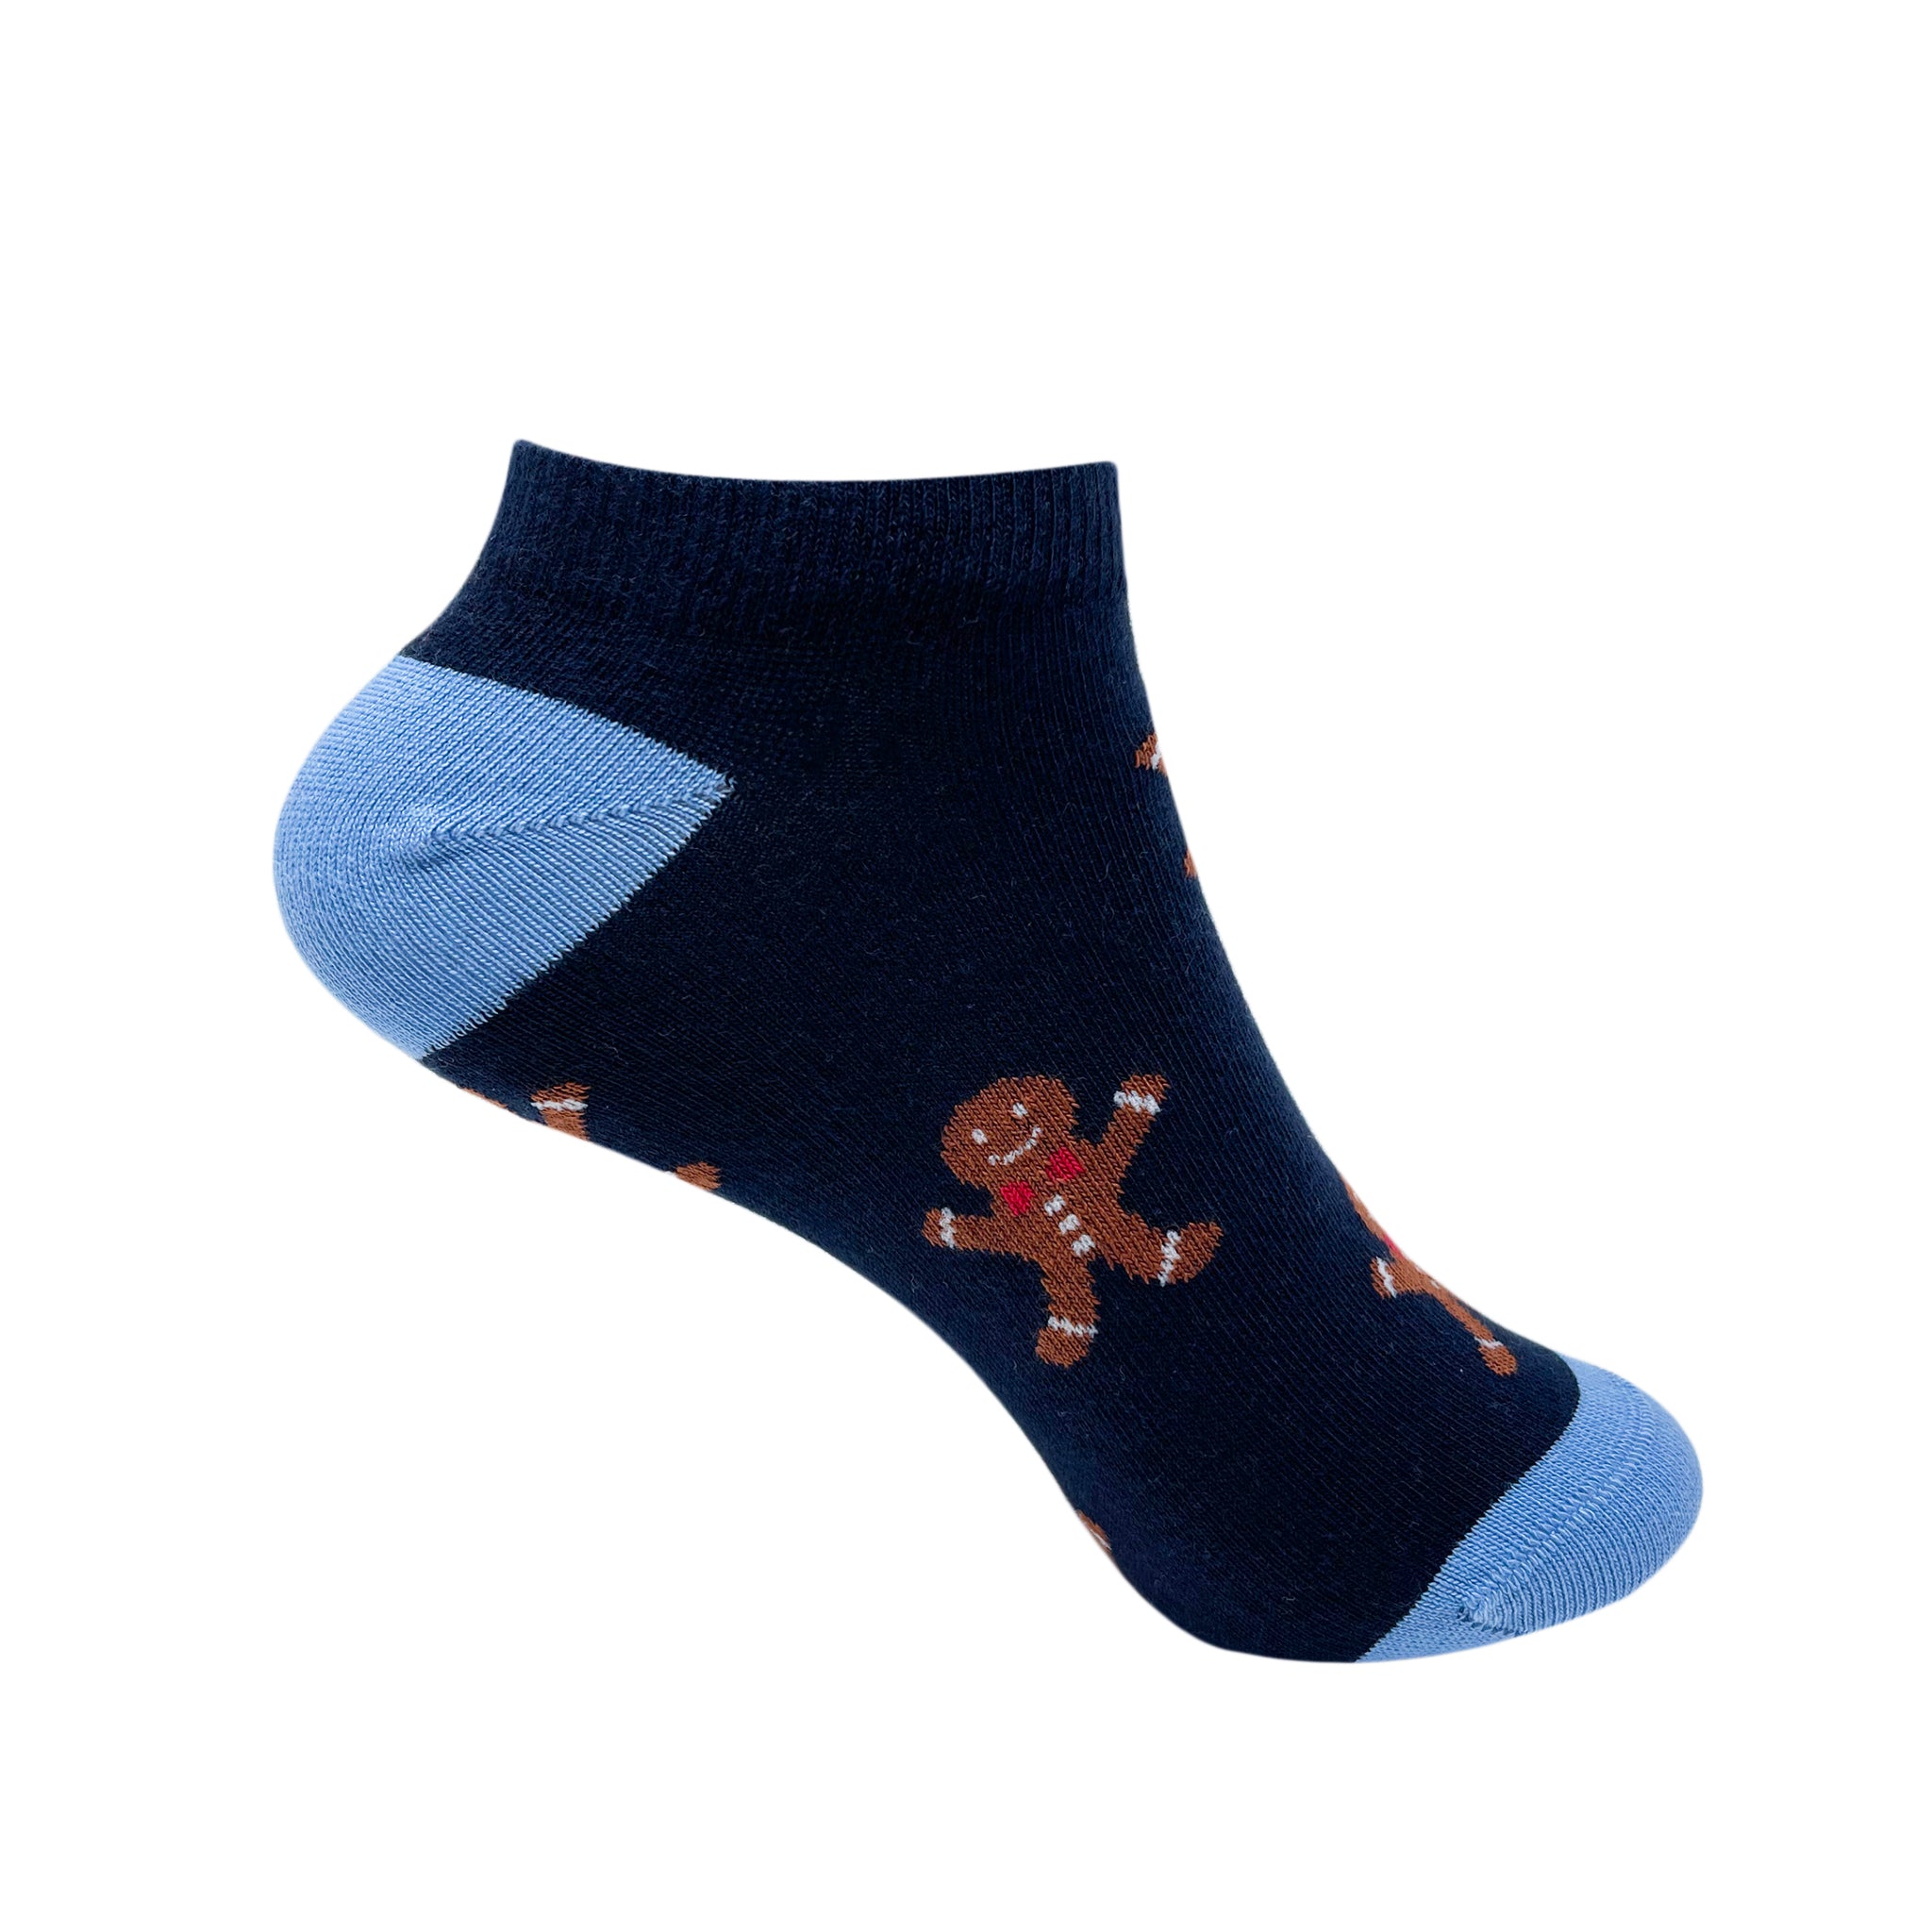 Ms. Ginger Socks For Women